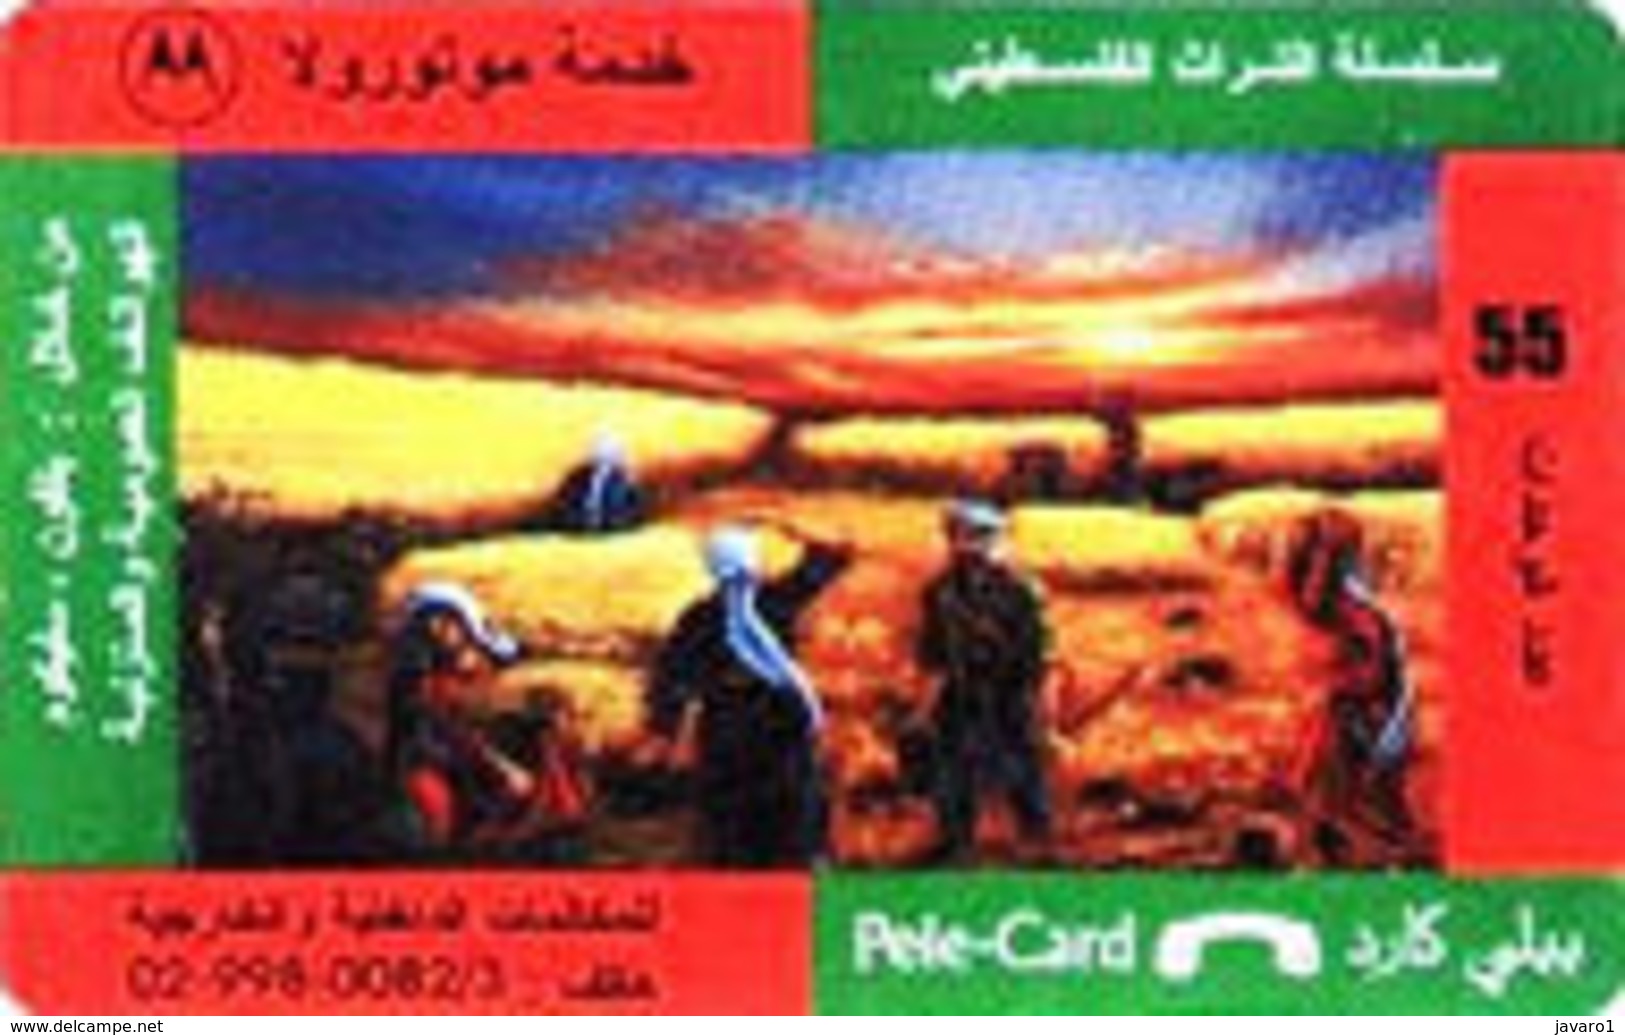 PALESTINA : PELE CARD 55u Wheatfield - Palestine